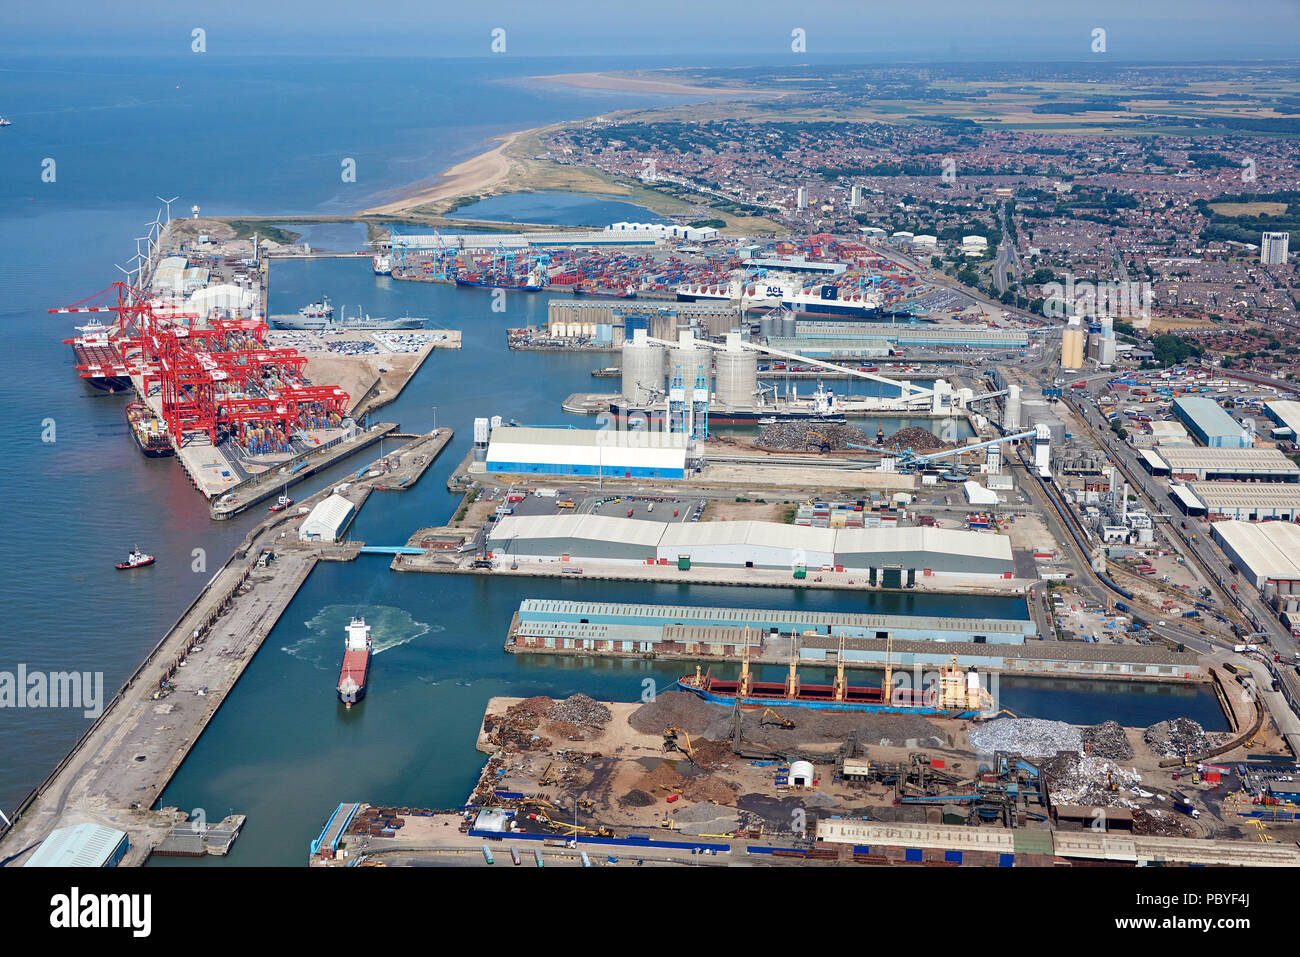 Une vue aérienne de Peel Port, quais Seaforth, Liverpool, Merseyside, North West England, UK Banque D'Images